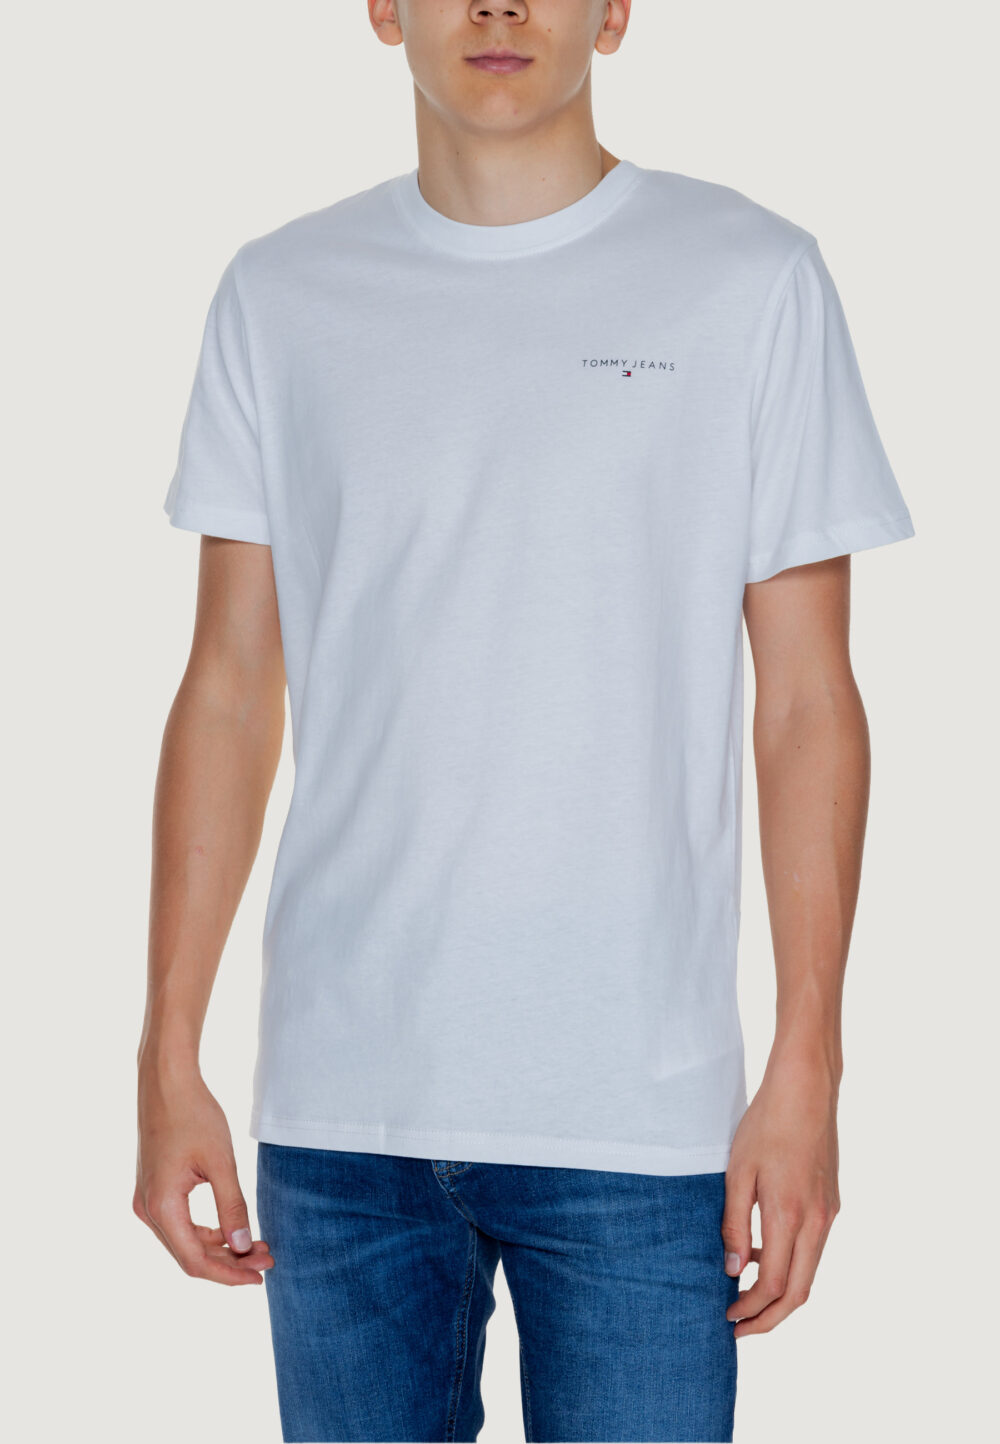 T-shirt Tommy Hilfiger Jeans TJM LINEAR Bianco - Foto 1